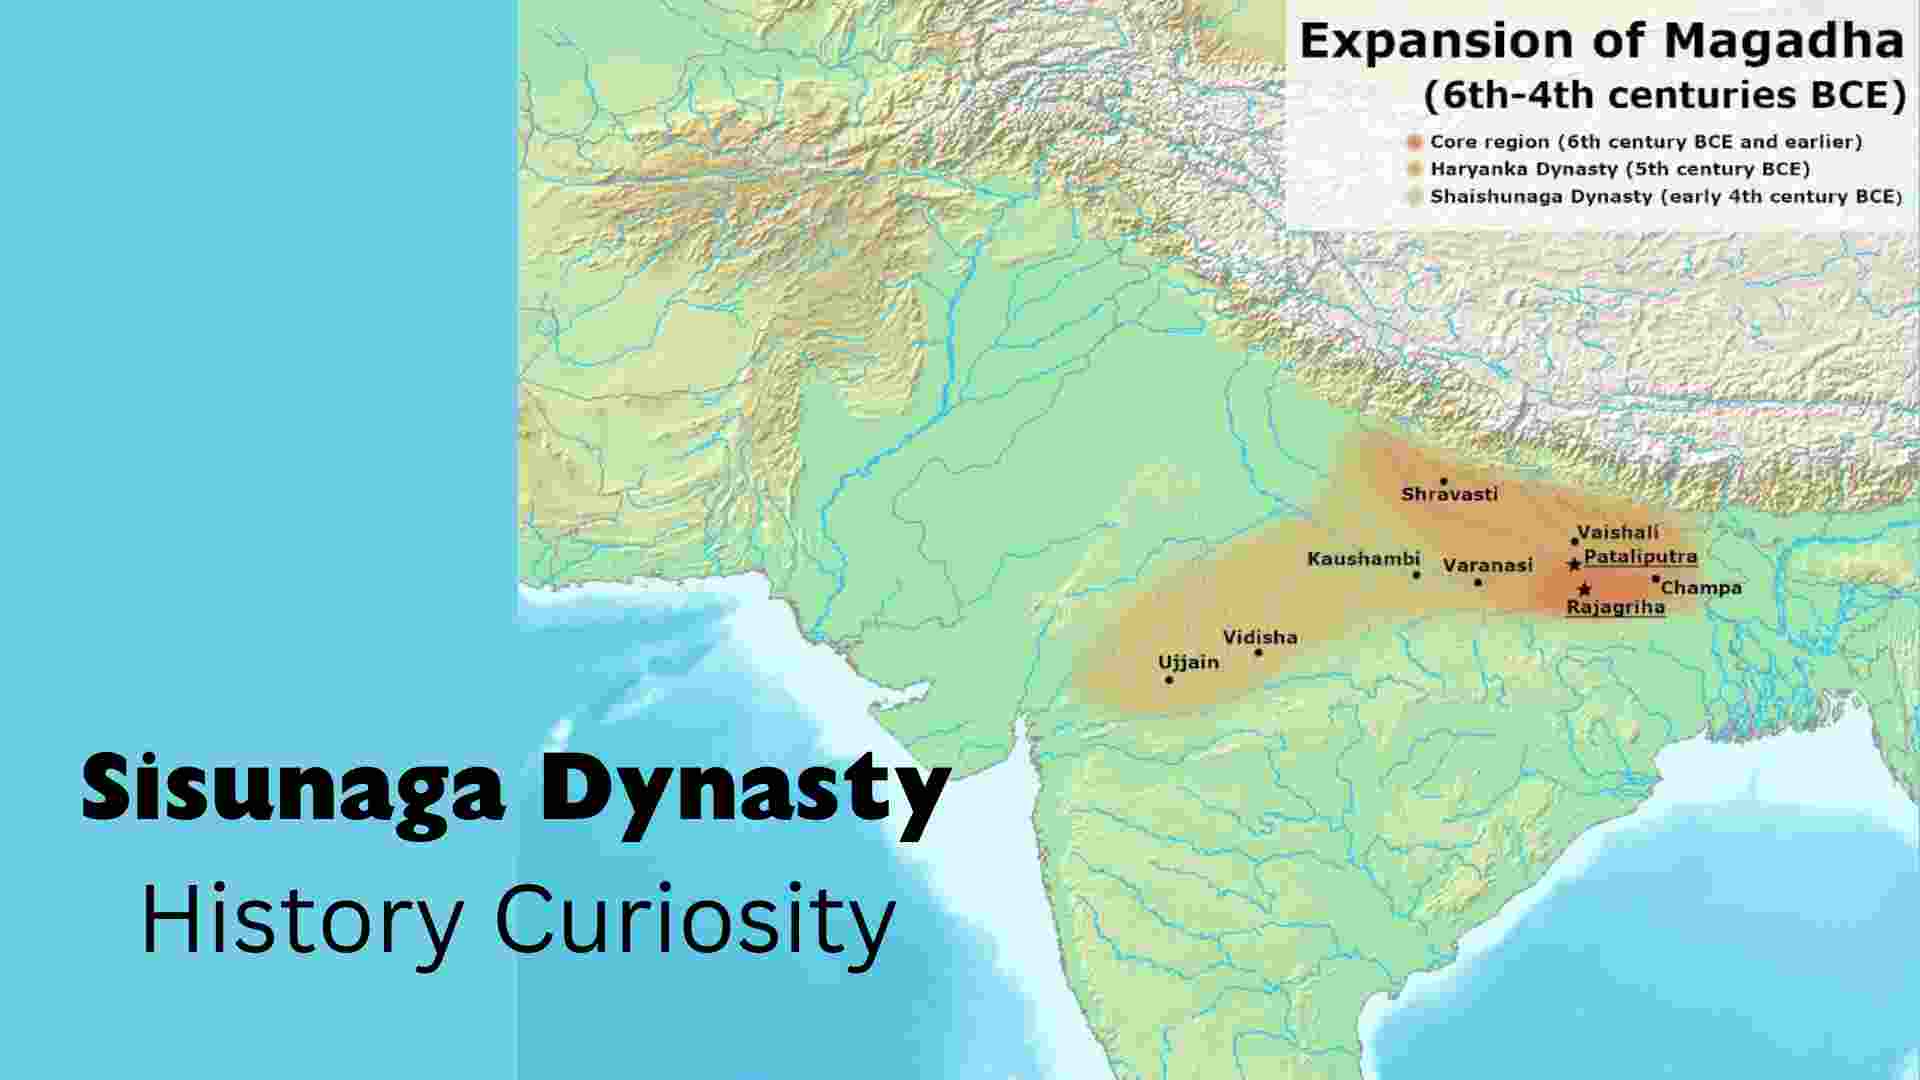 Sisunaga Dynasty